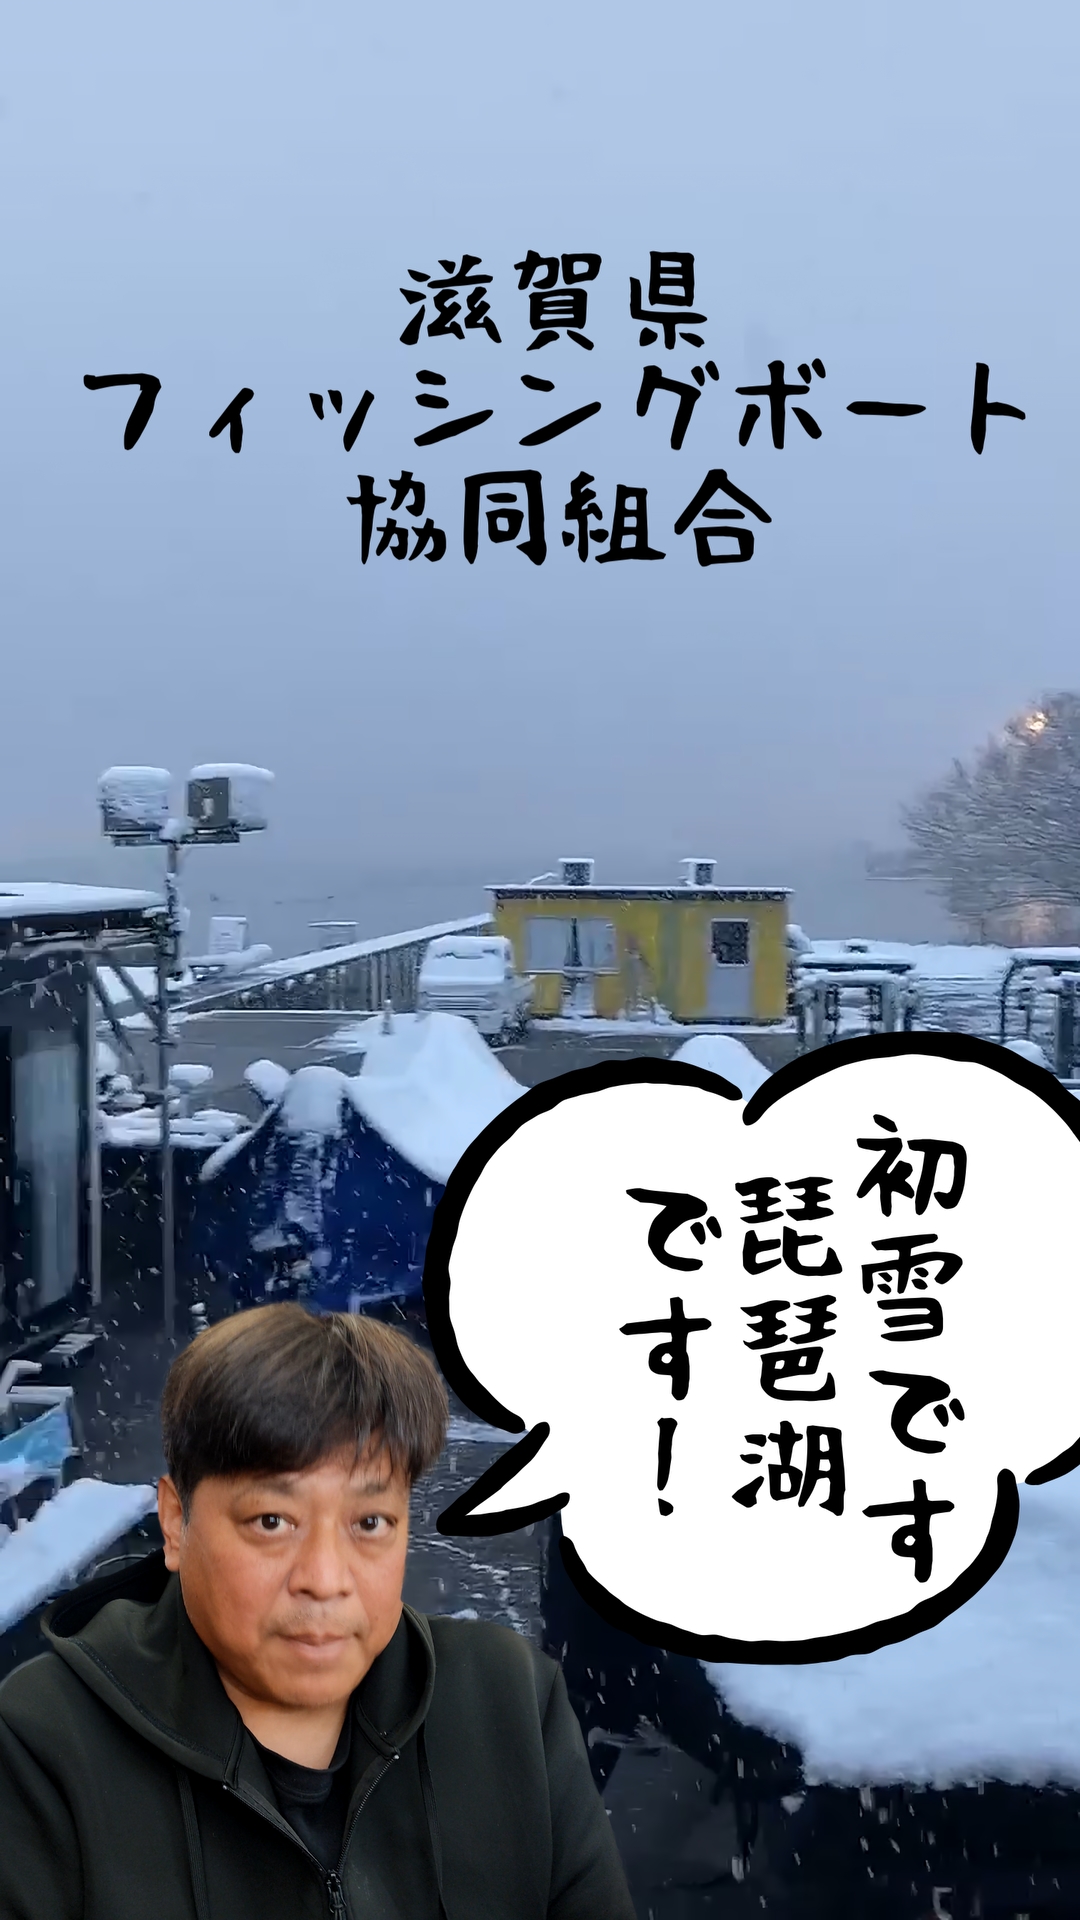 初雪です。琵琶湖は雪が降りました♪